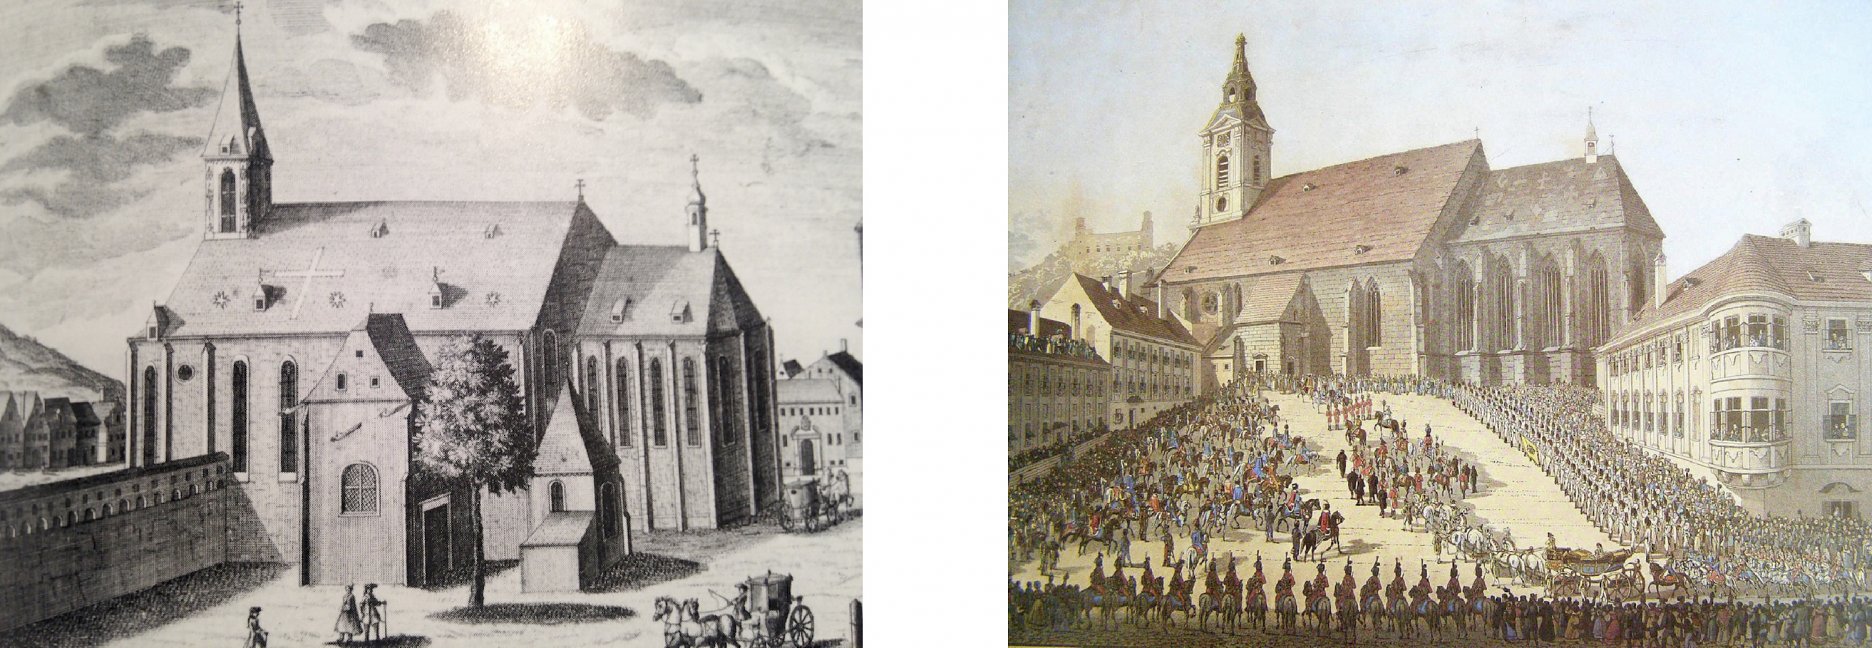 Rudnayovo námestie z r. 1735 (vľavo) a z r. 1825 z čias korunovácie Karolíny Augusty (vpravo)